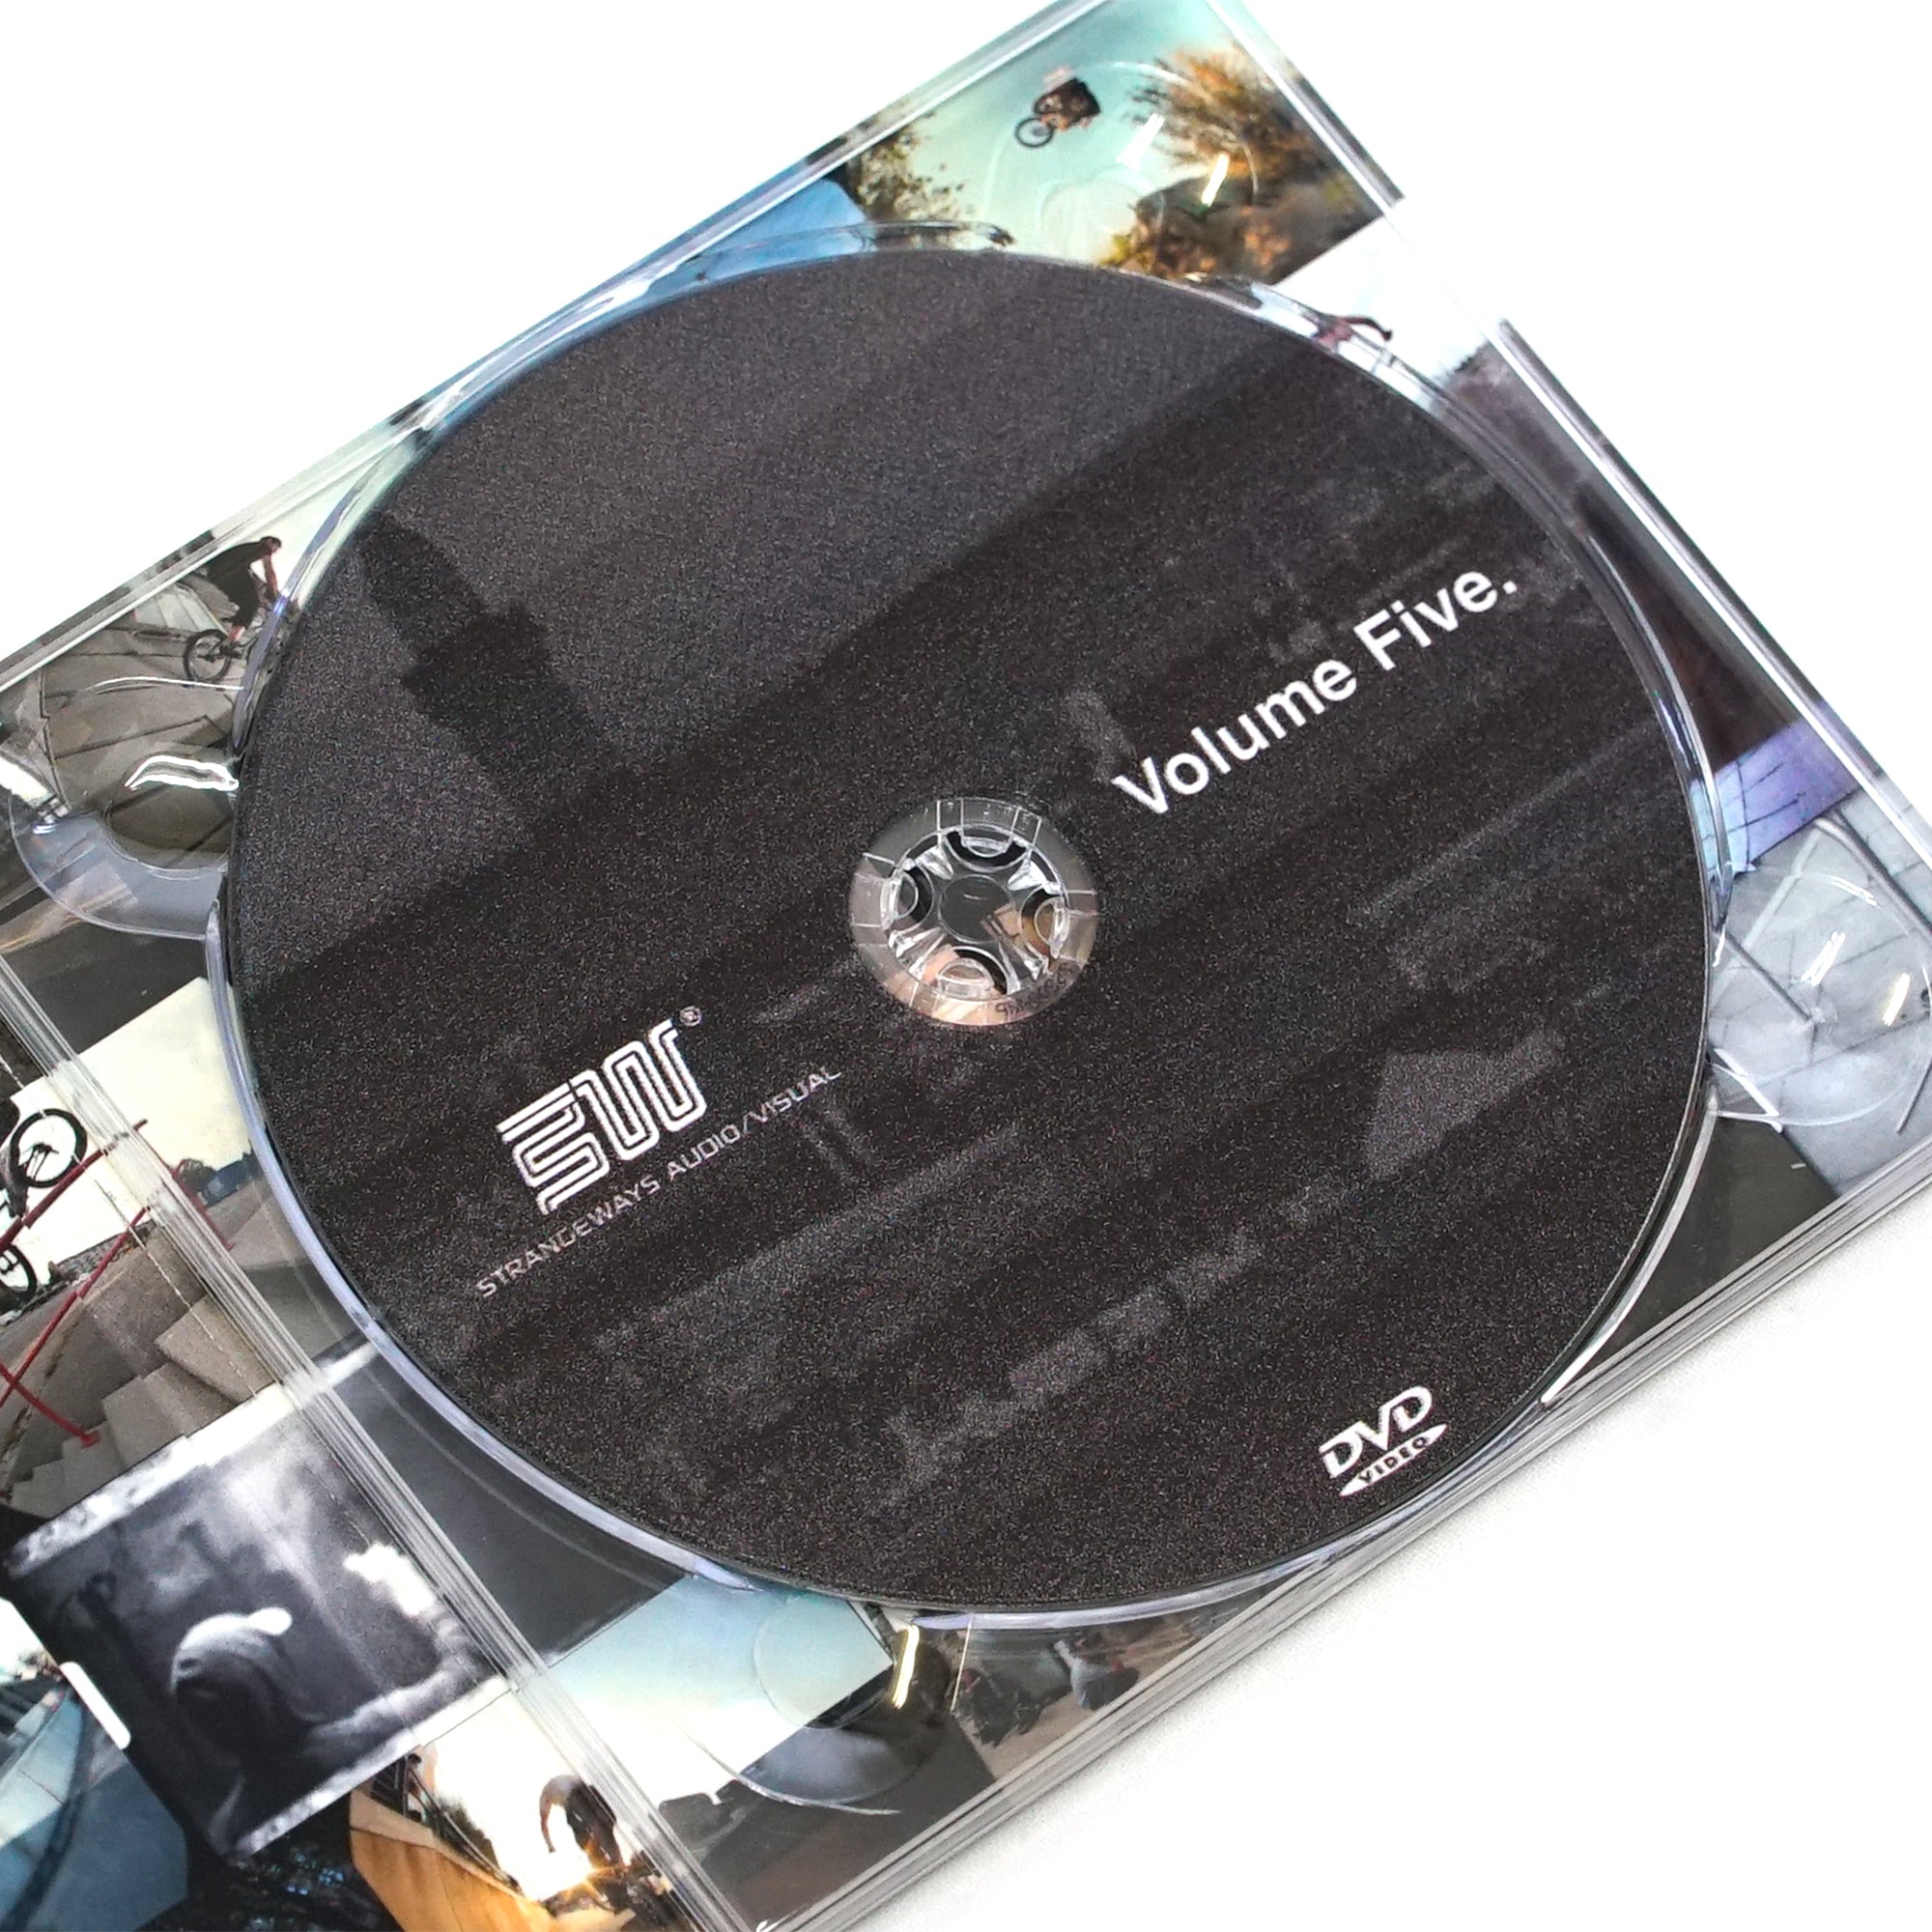 STRANGEWAYS - Volume Five DVD + Zine